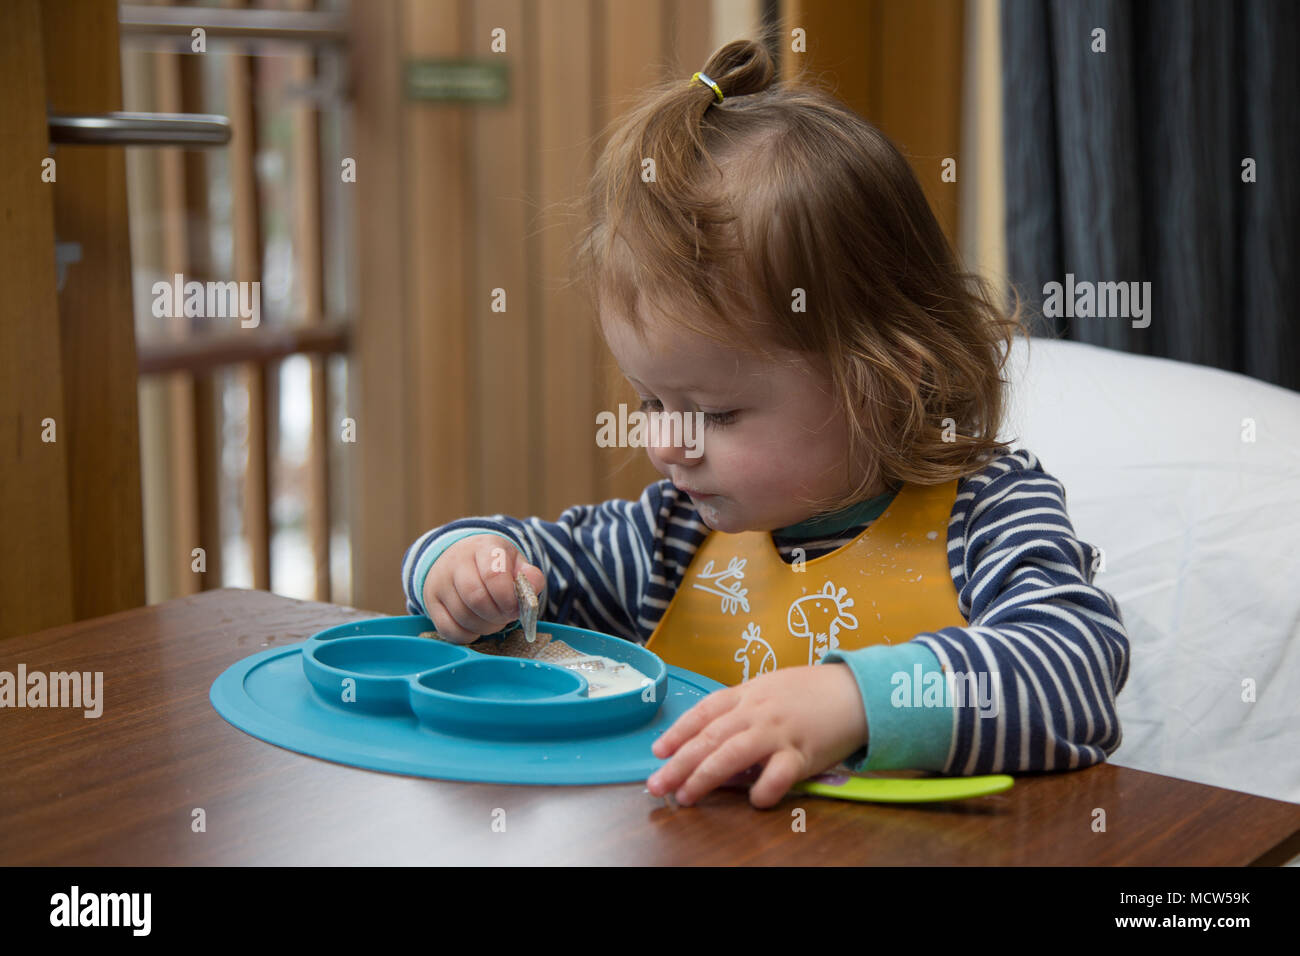 Toddler eating breakfast Stock Photo